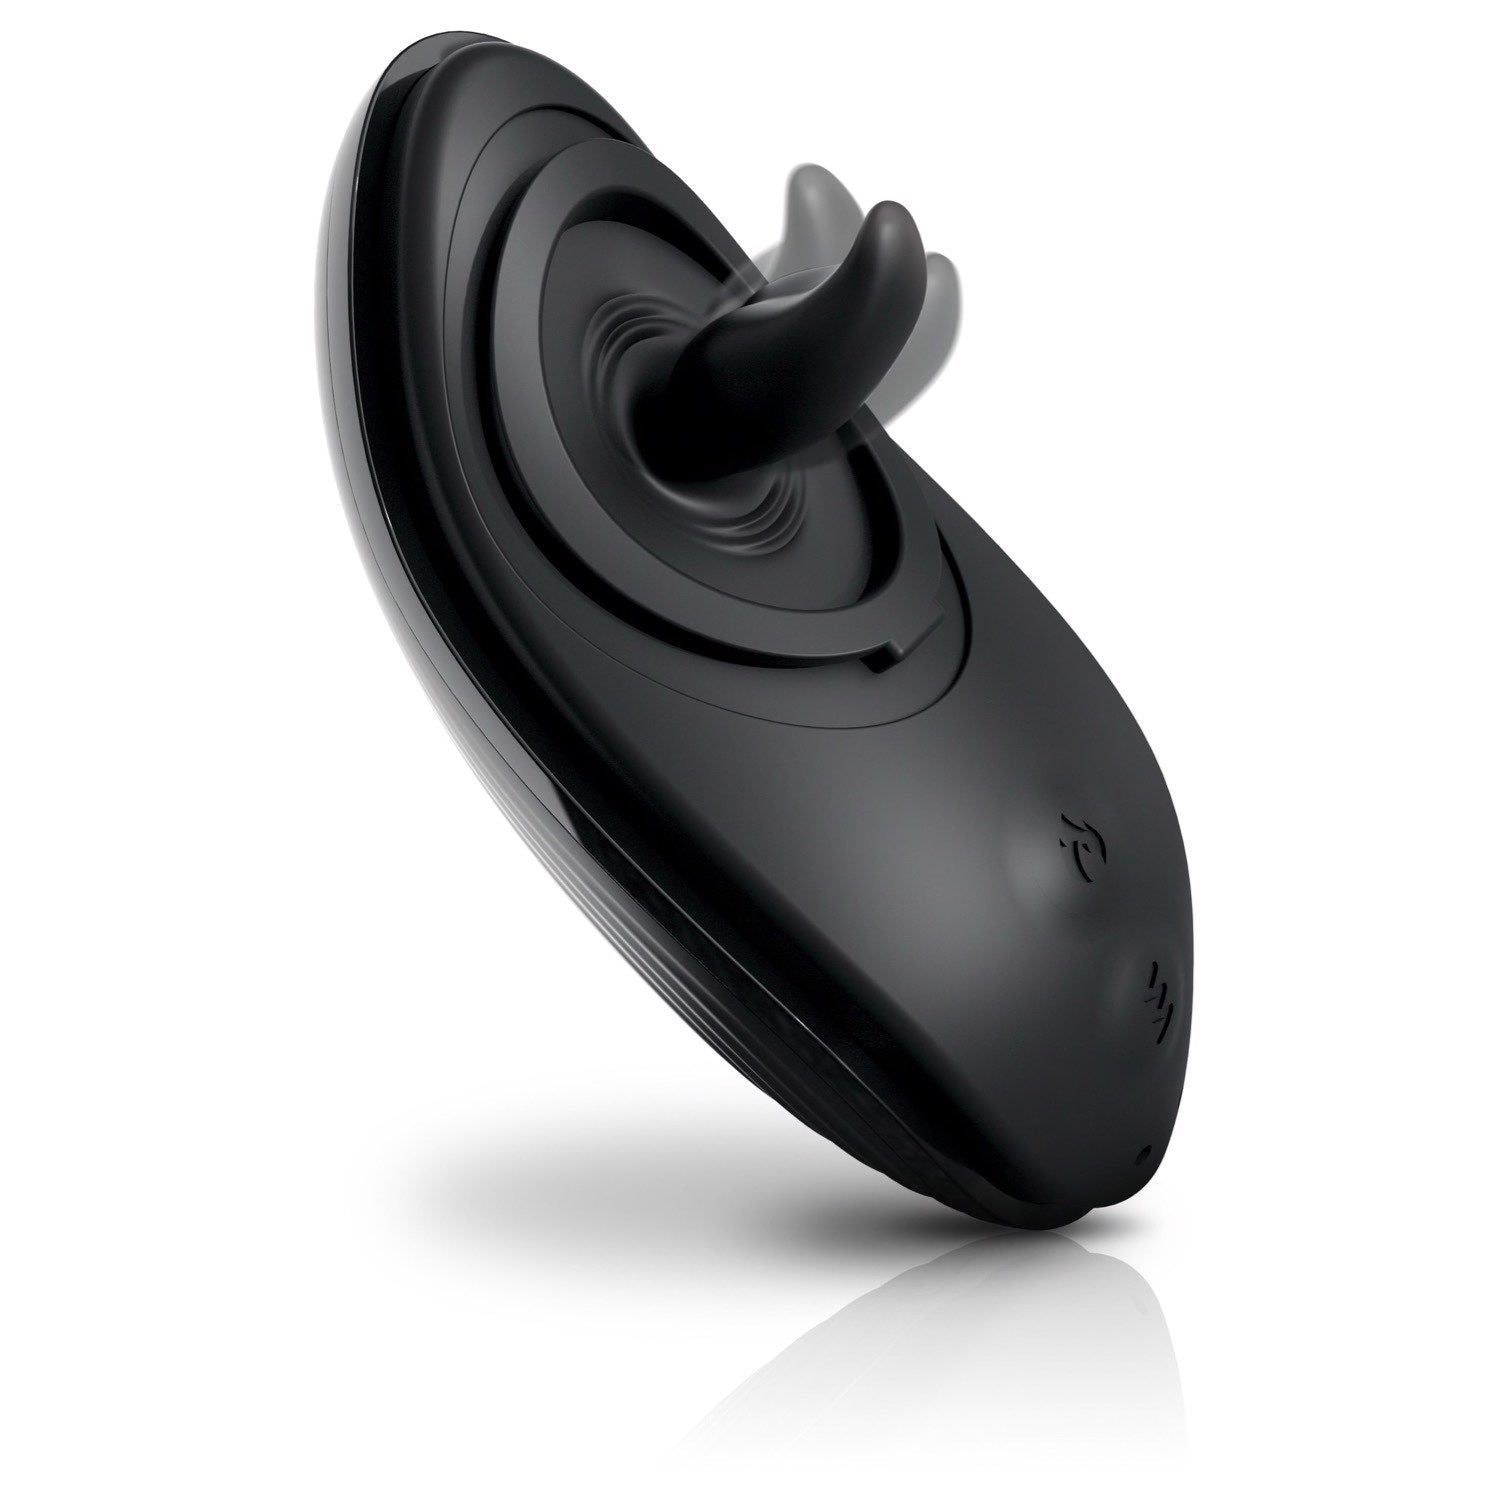 理查兹爵士 Control Silicone Rim Joy - 黑色 USB 可充电肛门刺激器 by Pipedream